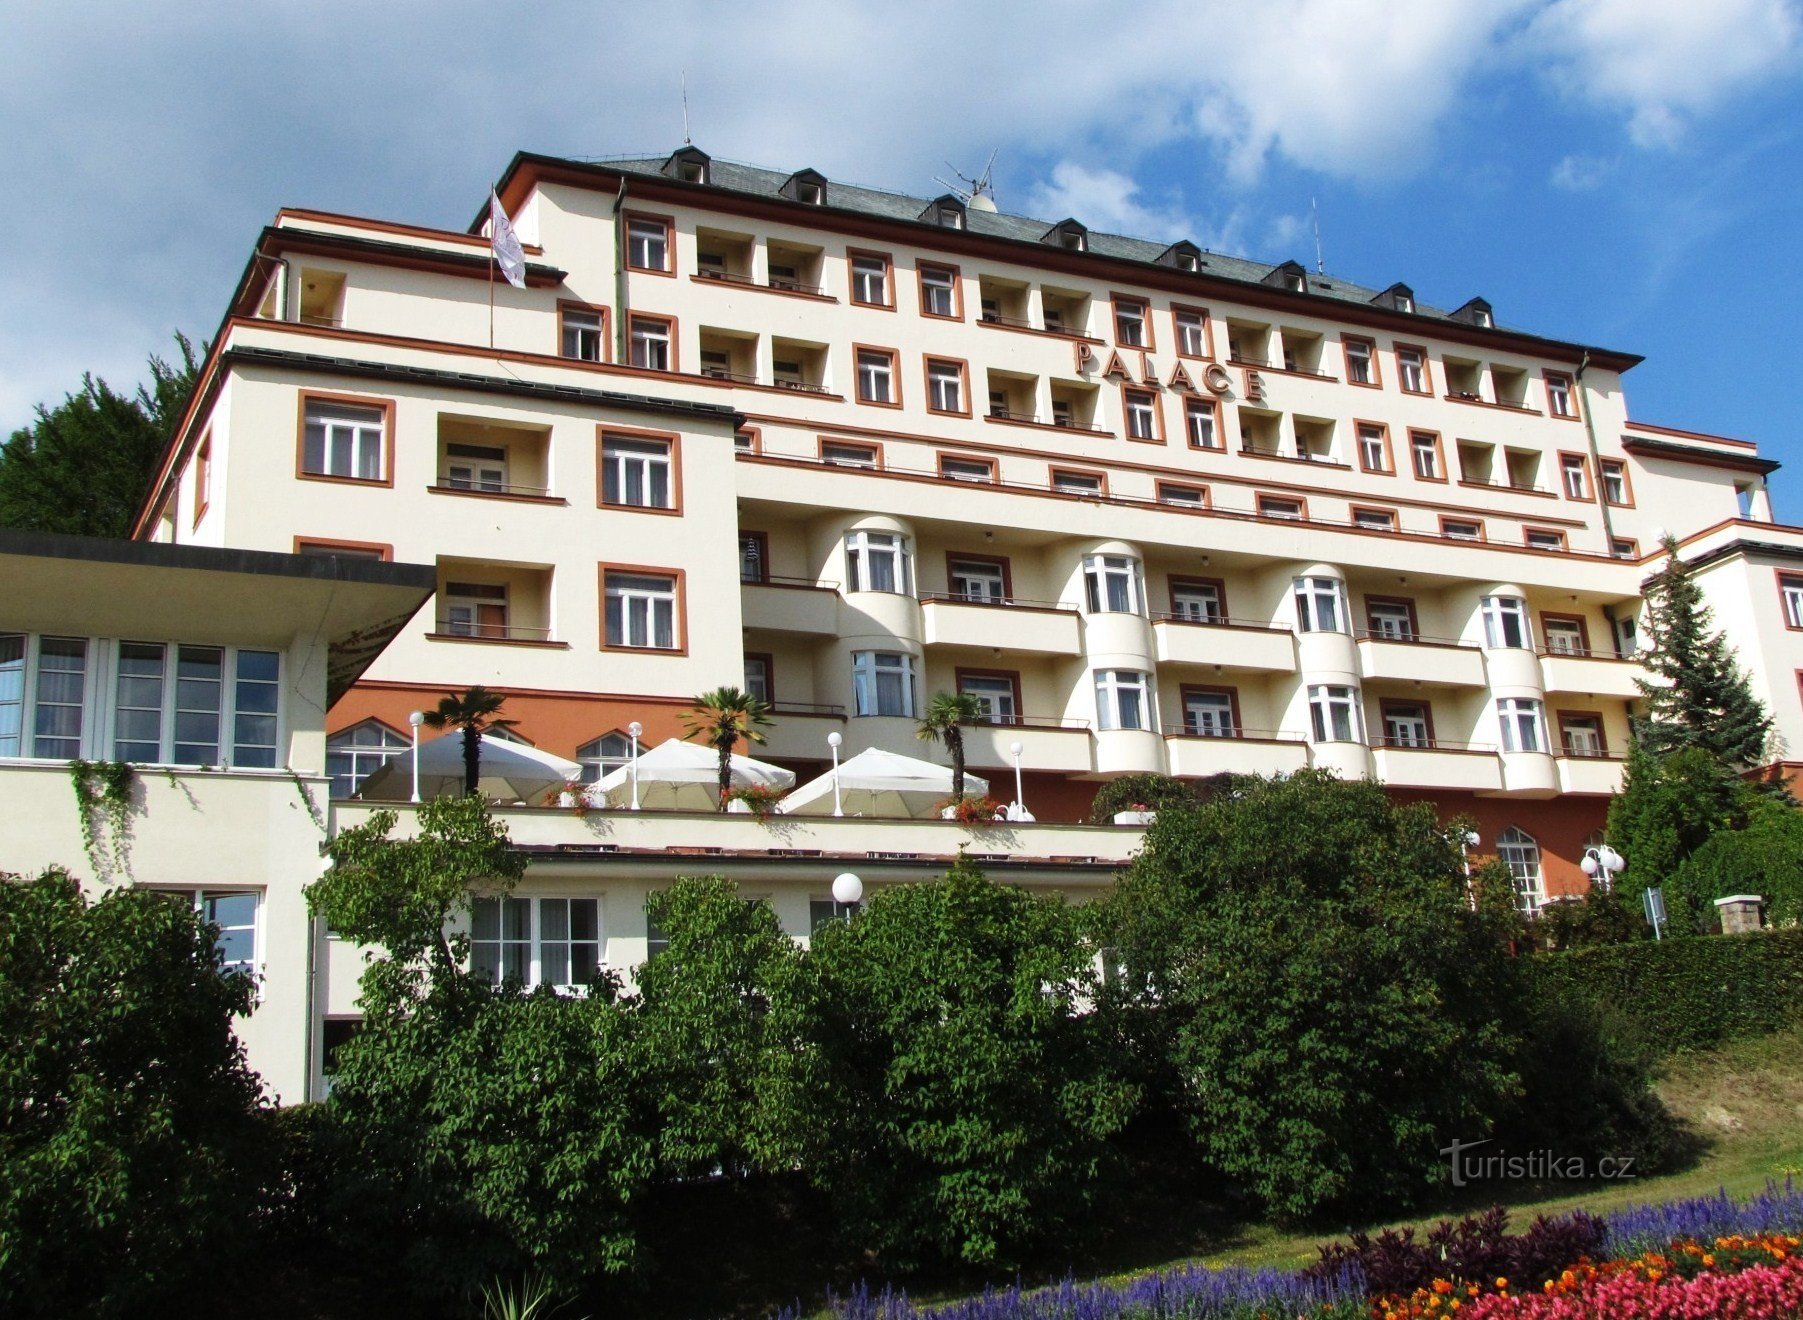 Dominanta Luhačovice - Palace hotel